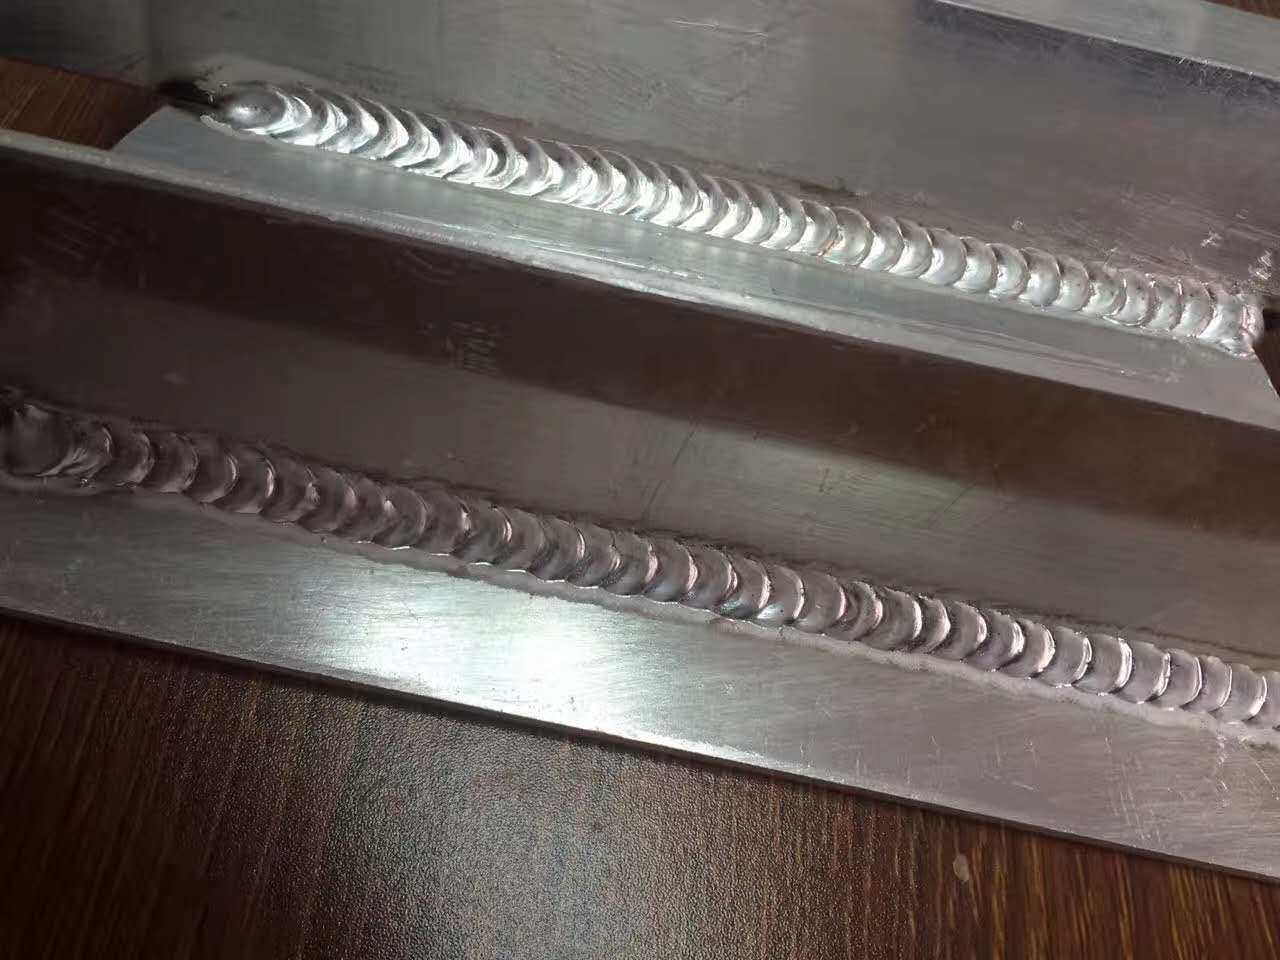 双脉冲铝焊机汽车修复铝焊机铝架子点焊铝焊